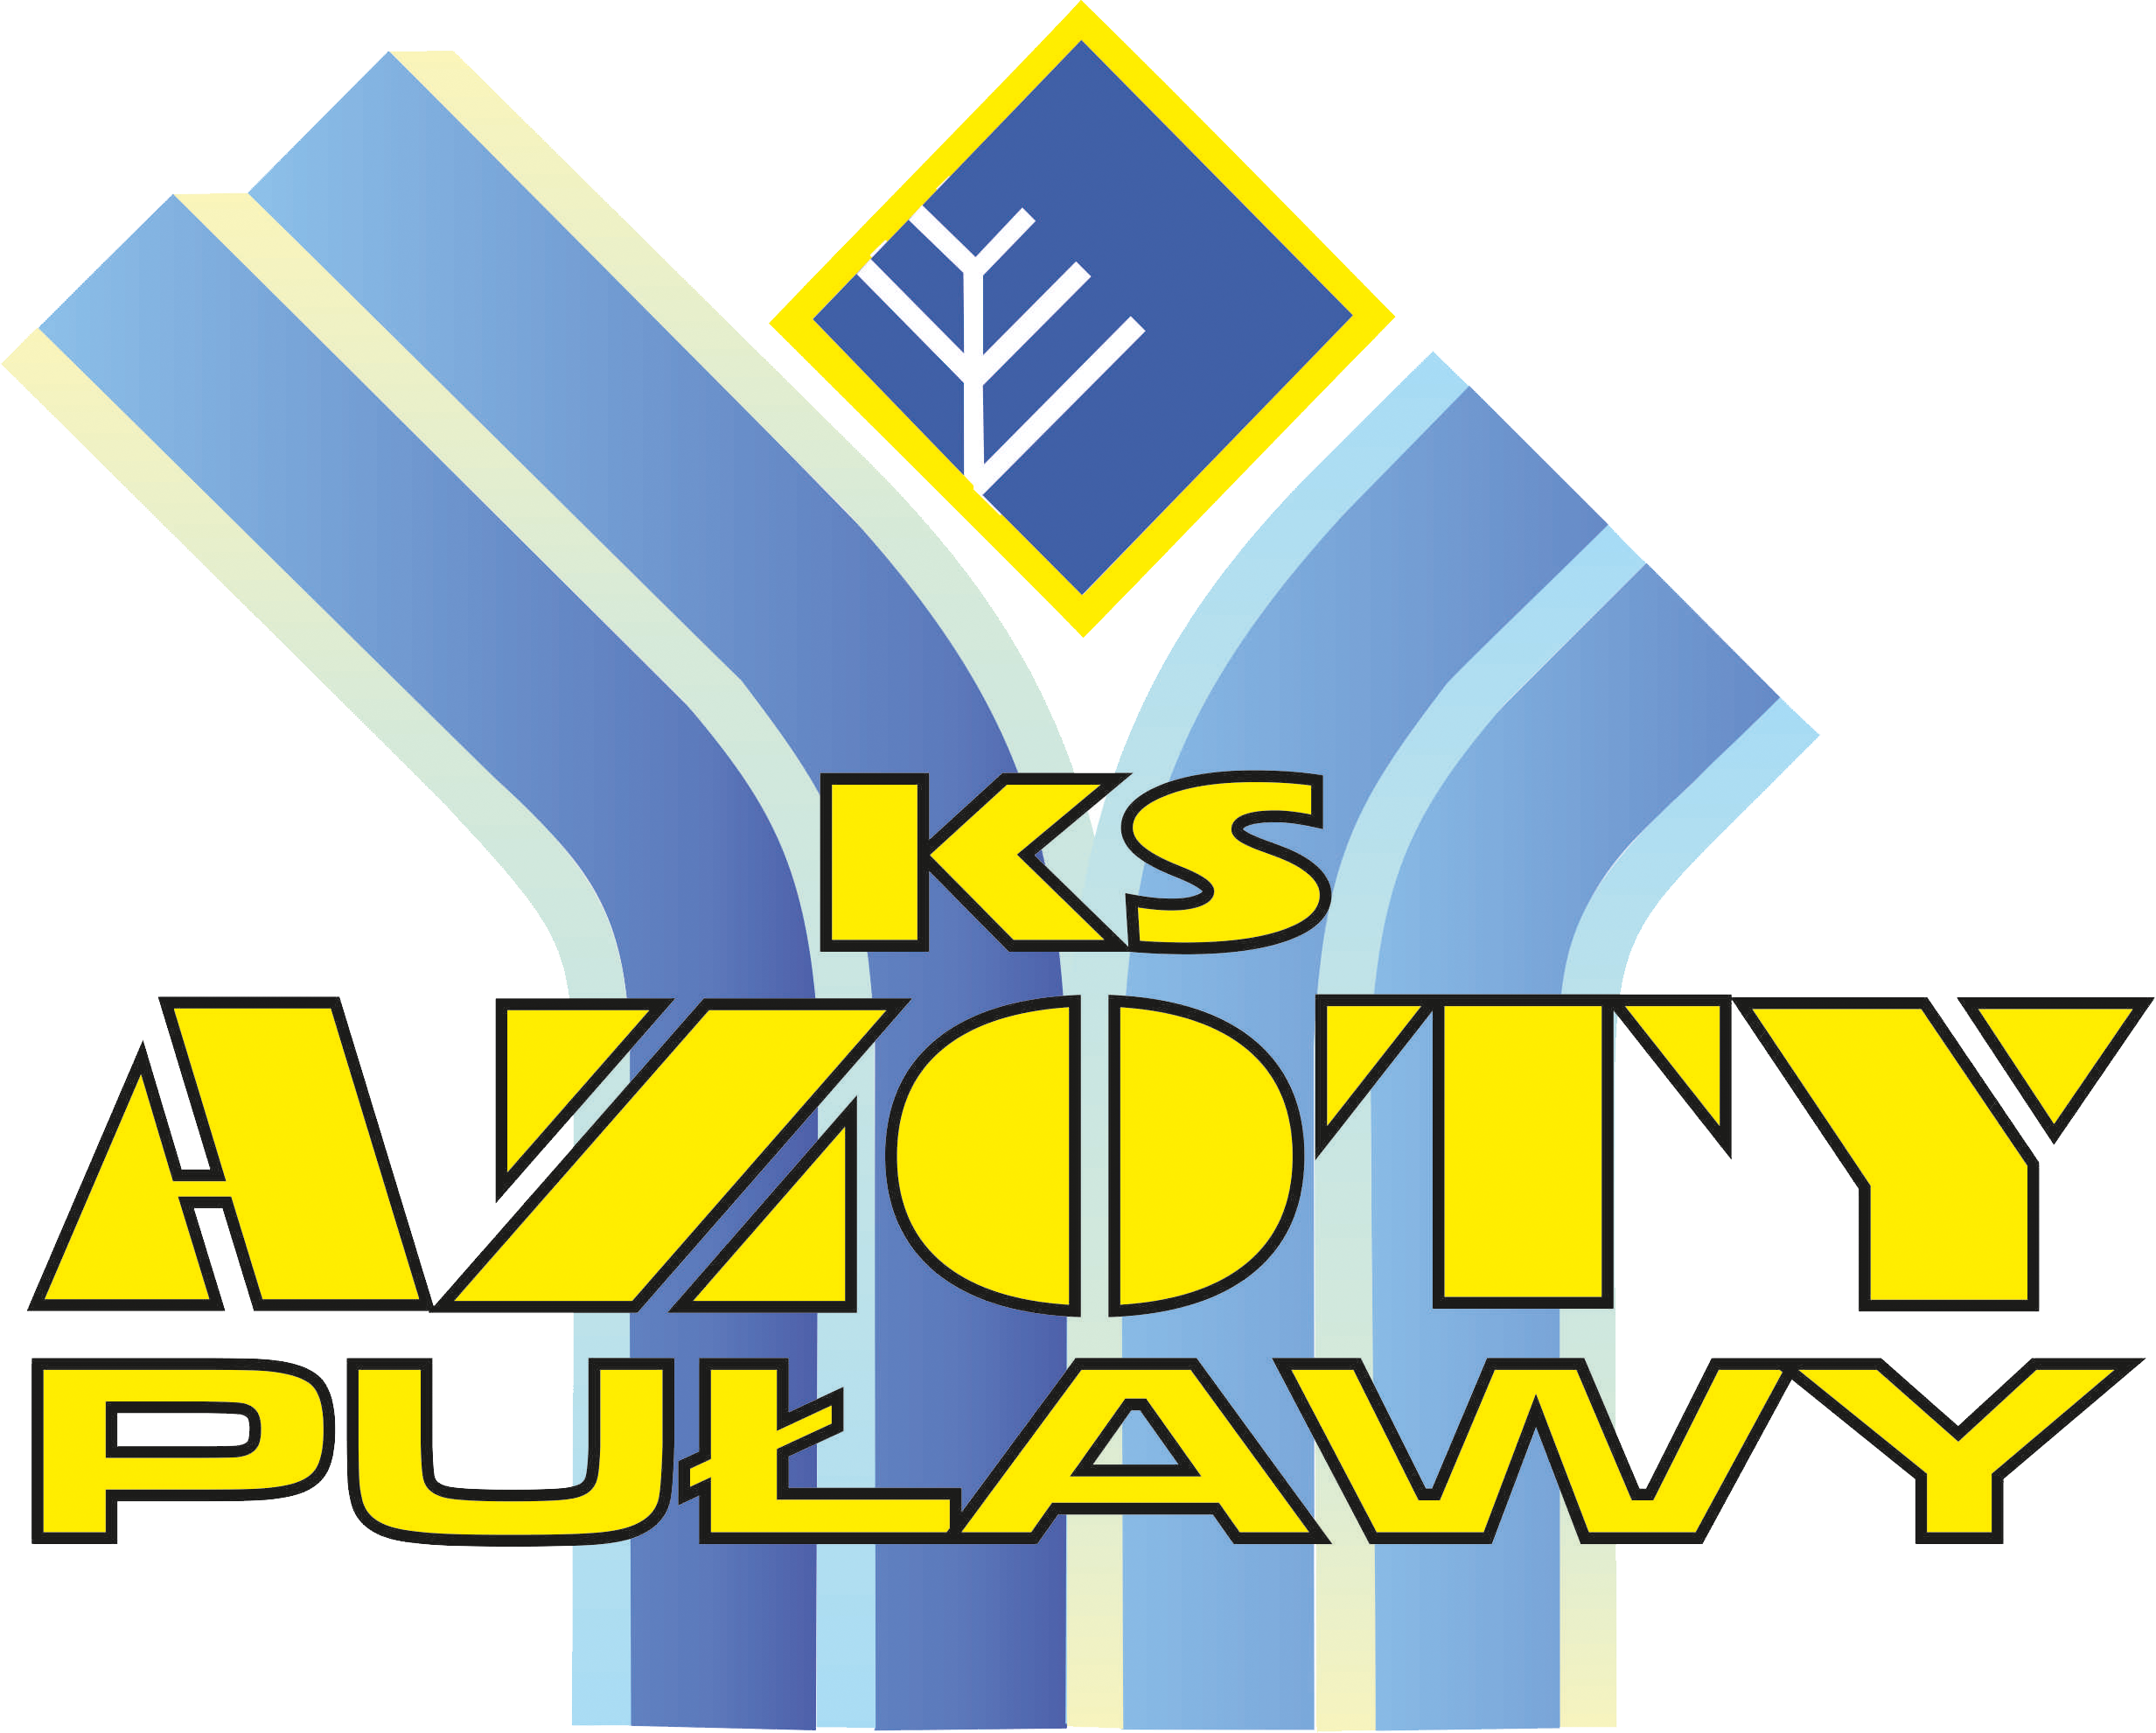 Azoty Puławy - logo